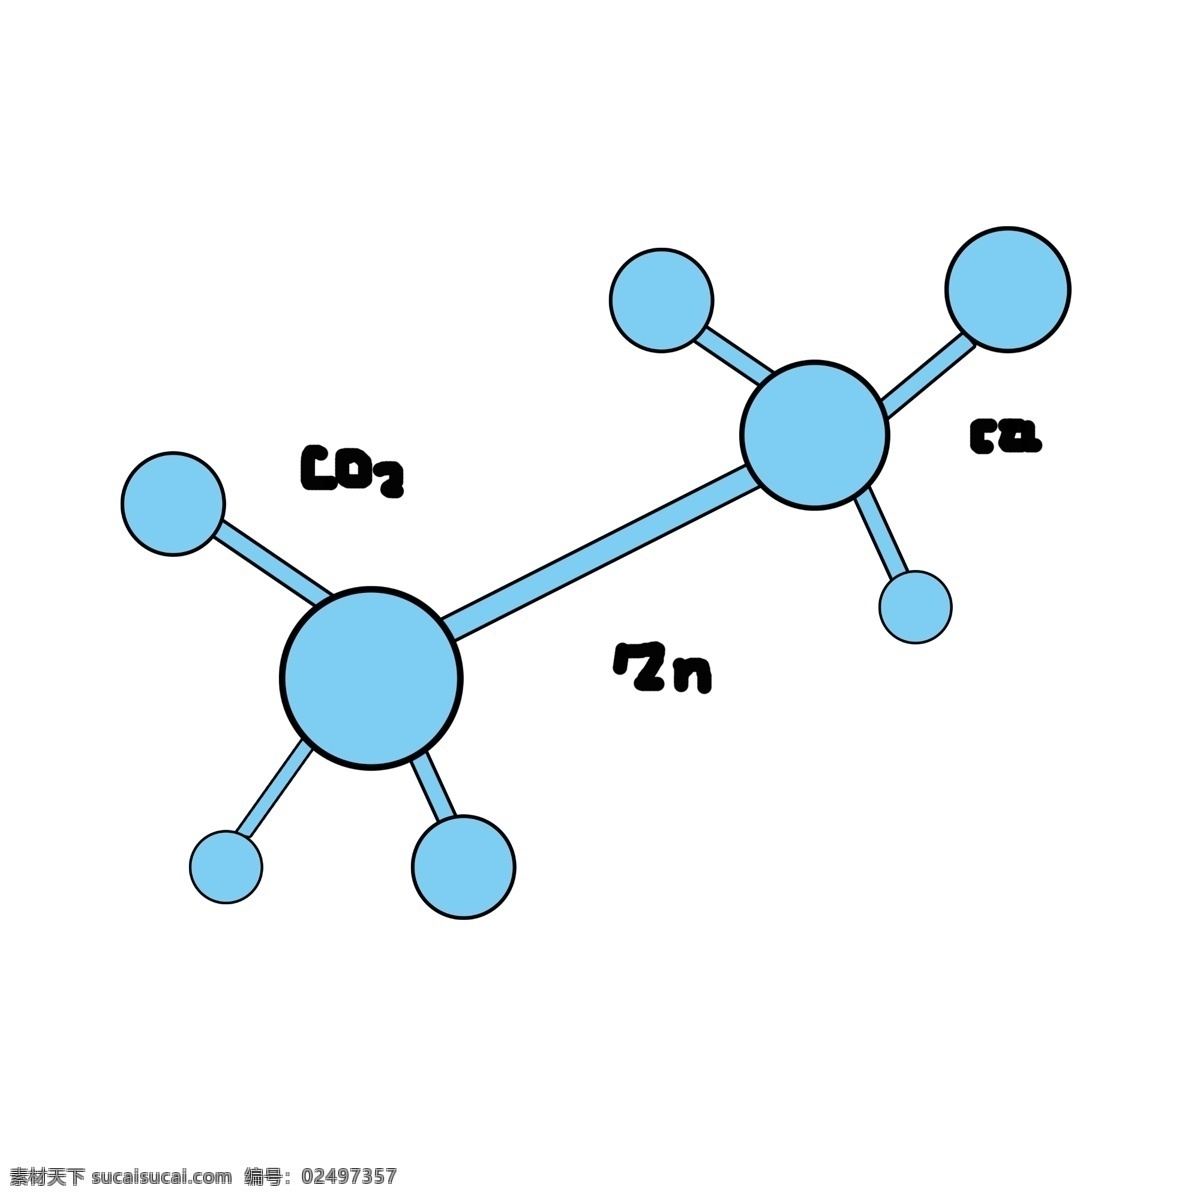 蓝色 化学 分子结构 物 化学结构图 化学分子 化学分子式 结构图 分子式 插画